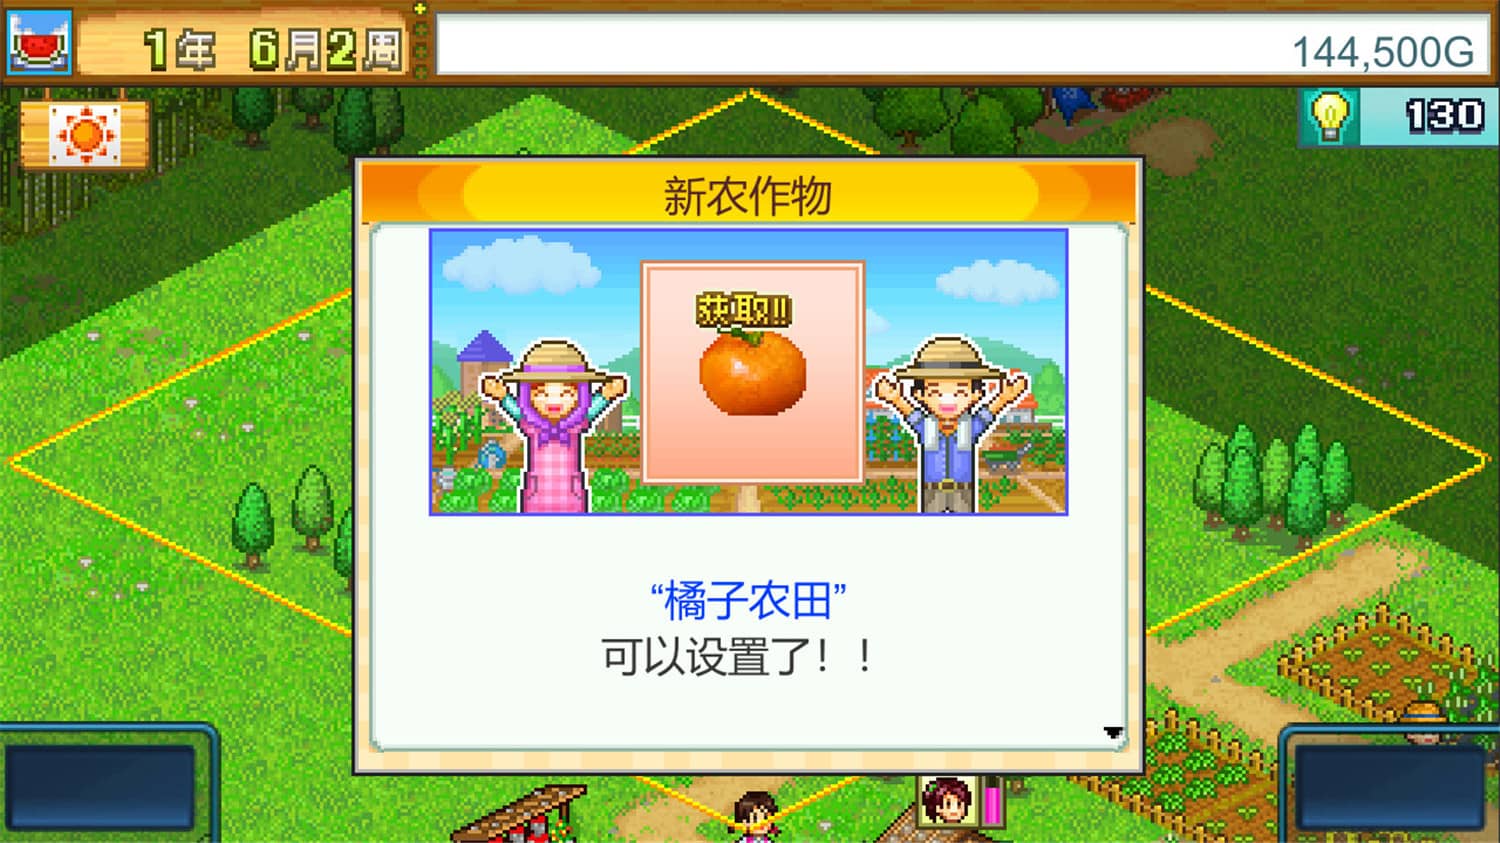 晴空农场物语/Pocket Harvest-5